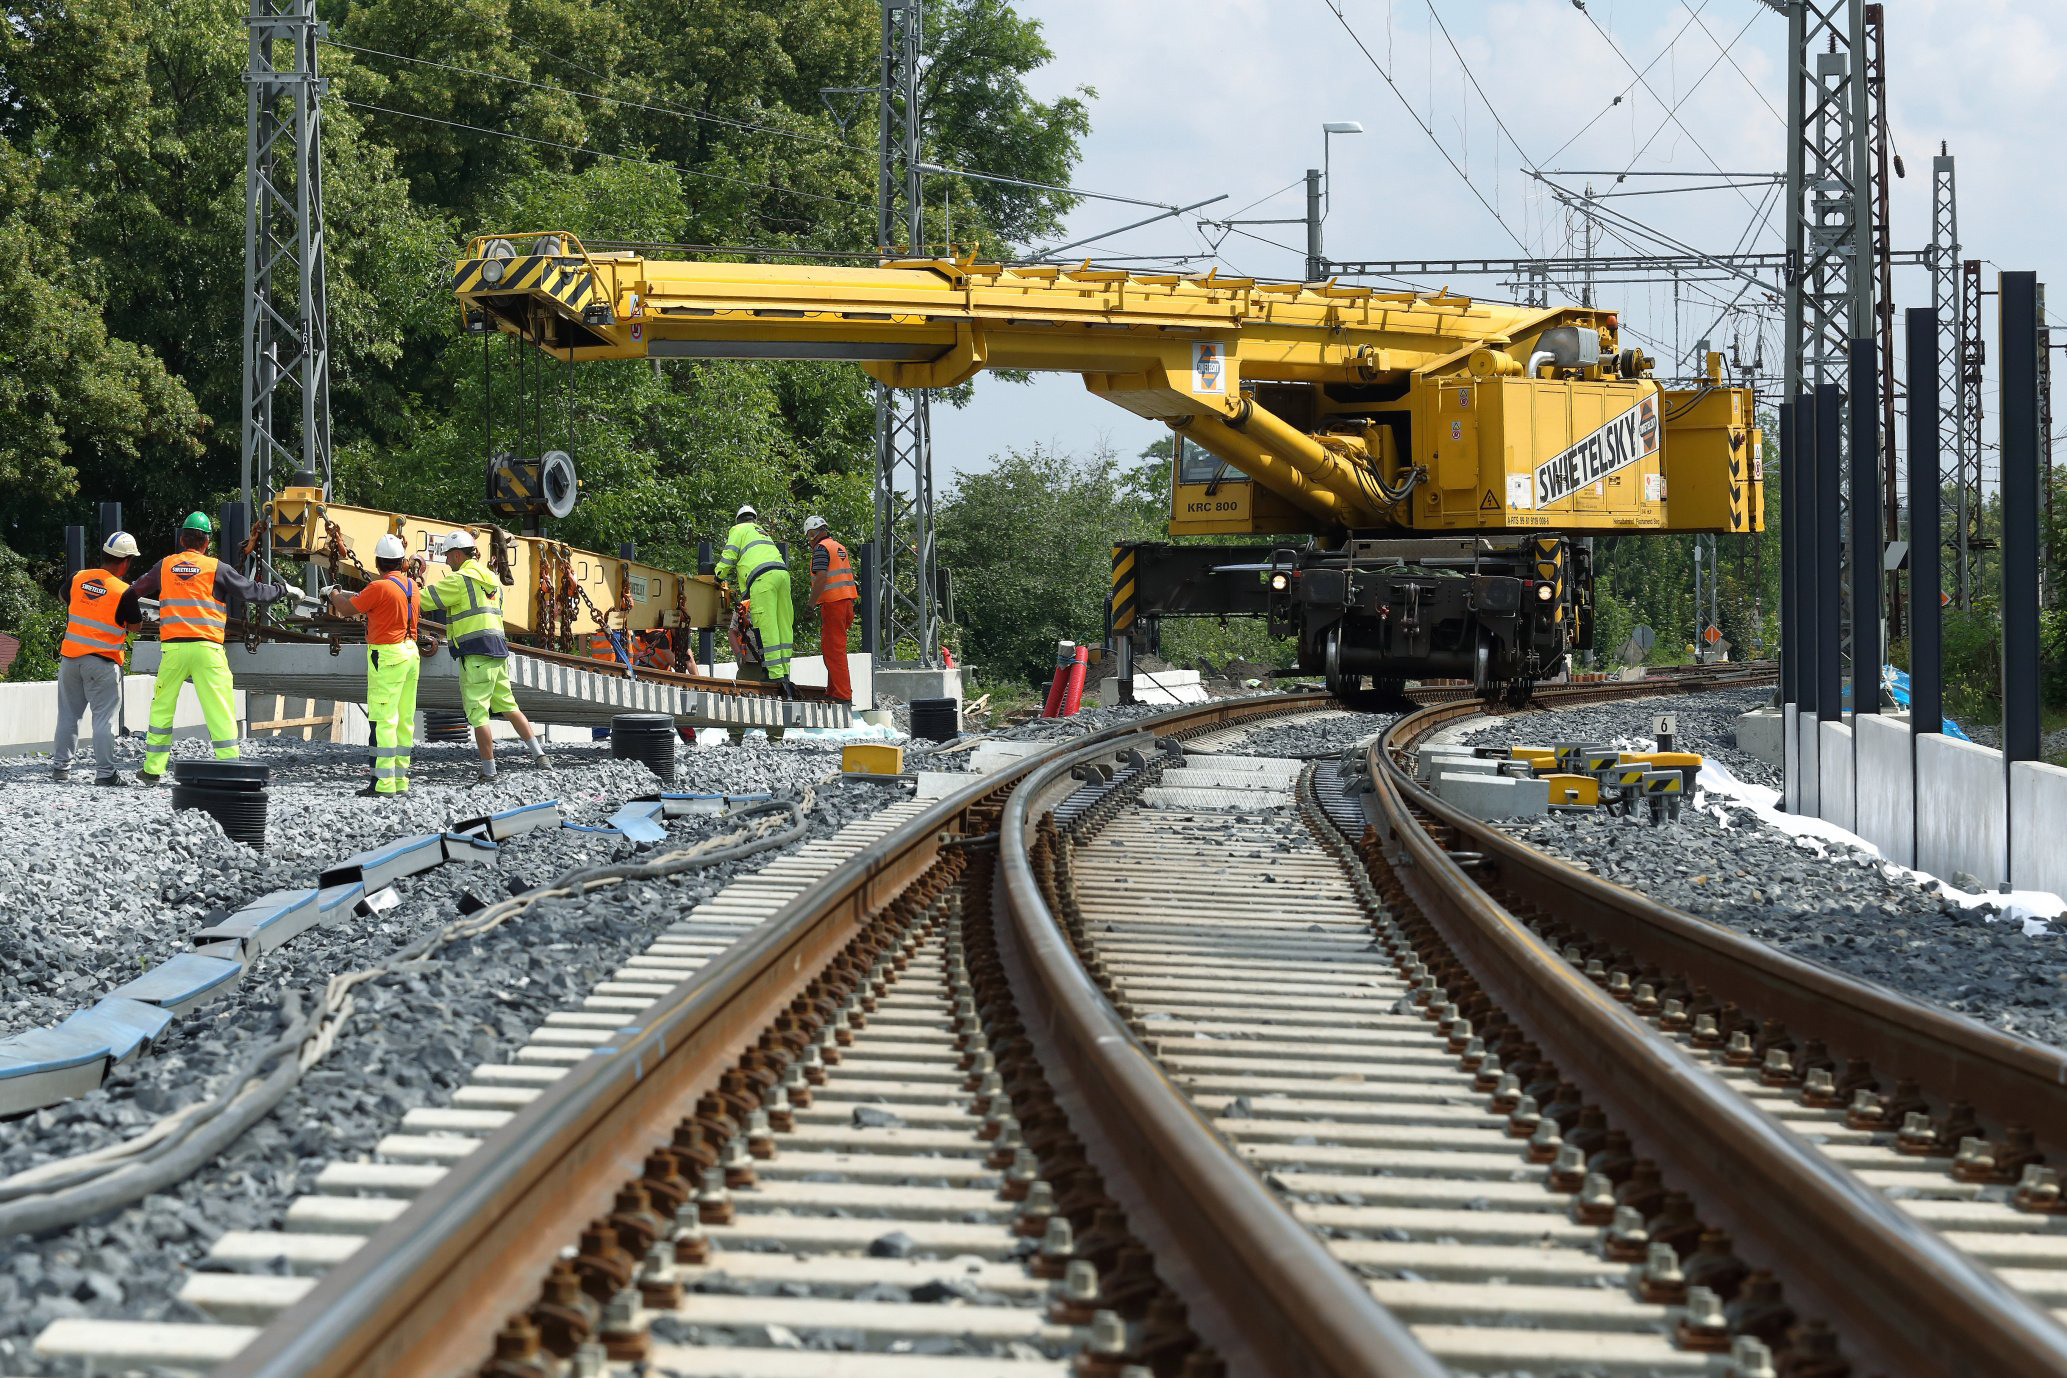 Obnova železniční stanice, Čelákovice - Construcții feroviare